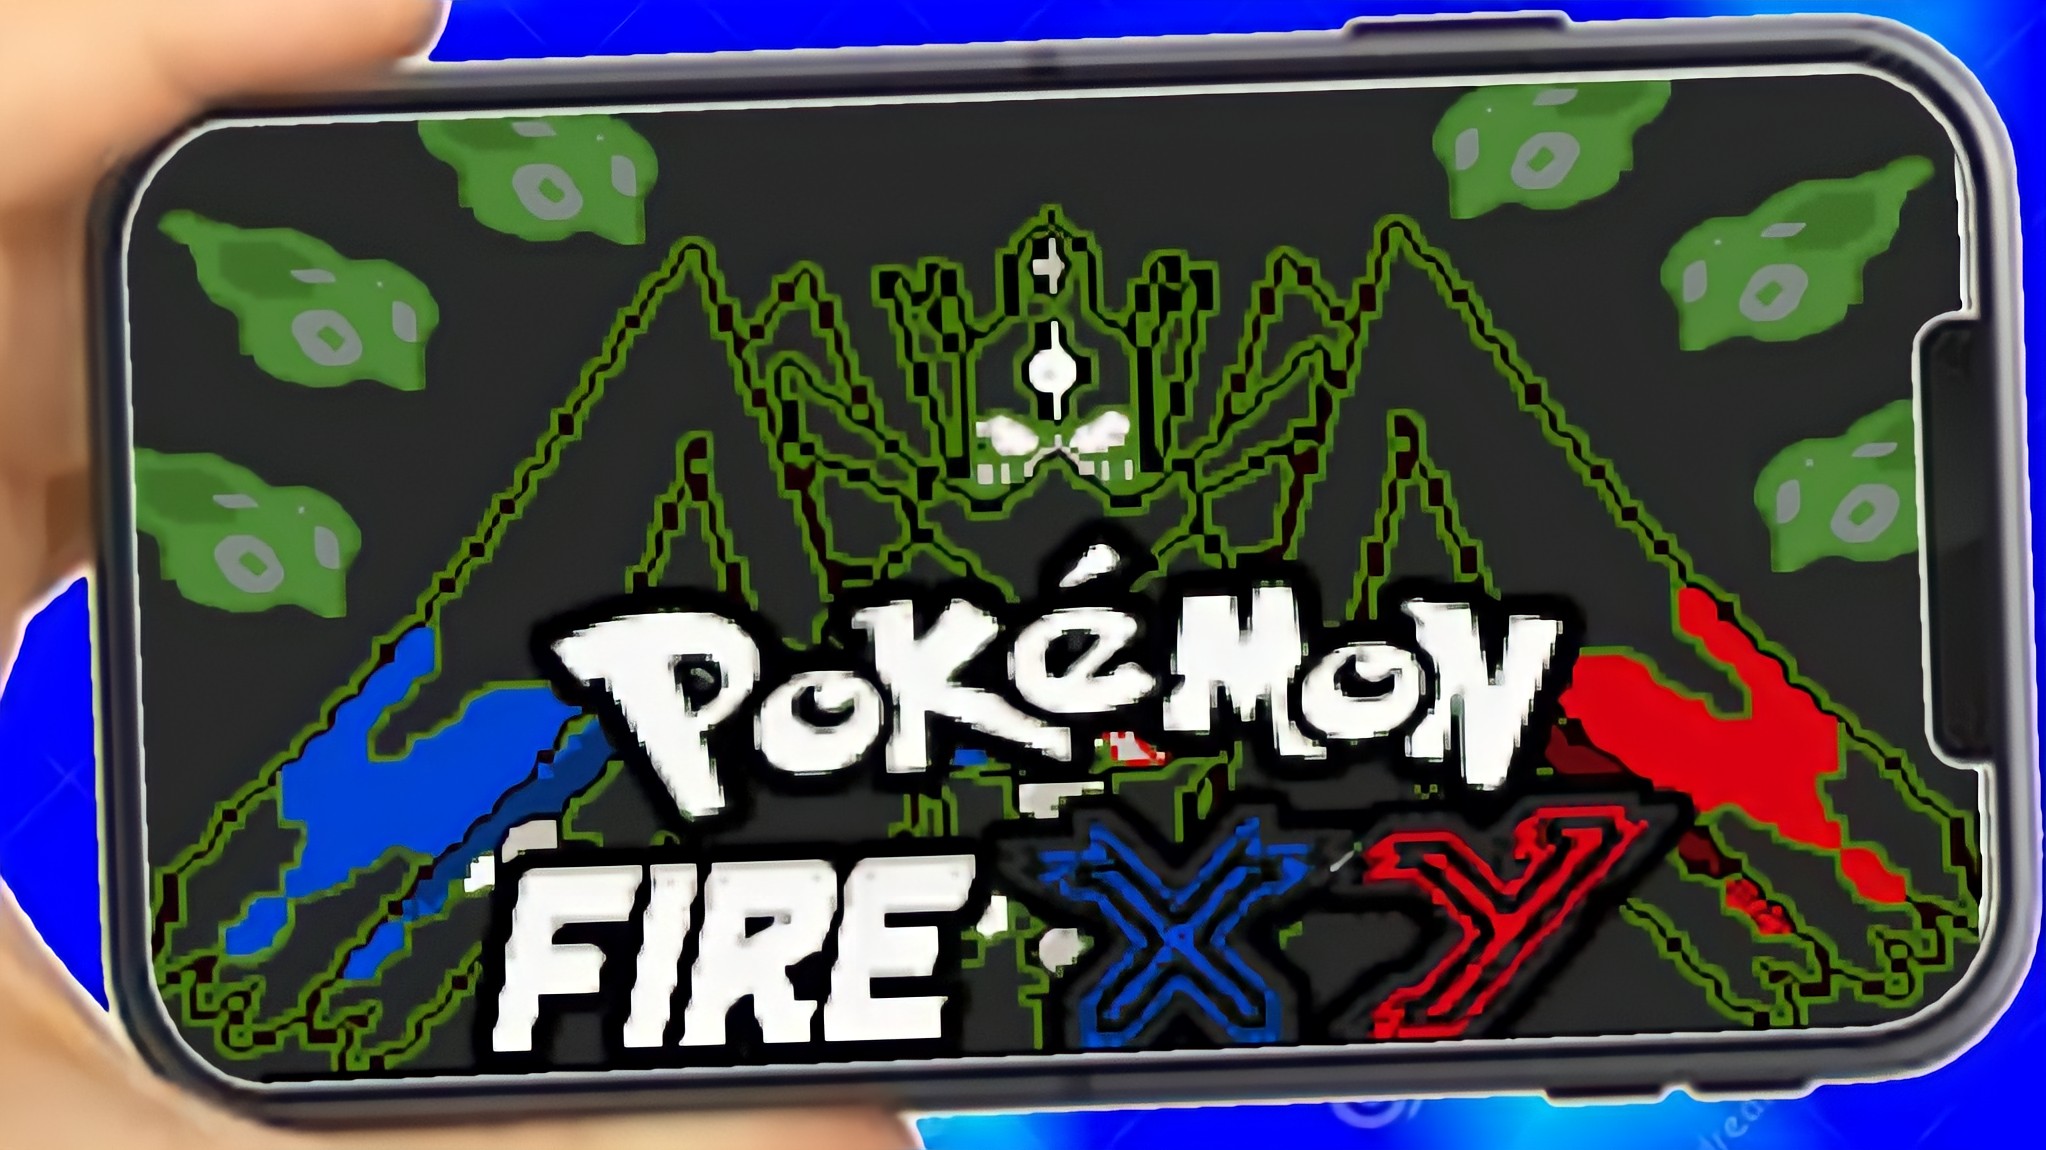 Pokémon Fire XY ROM - Nintendo GBA